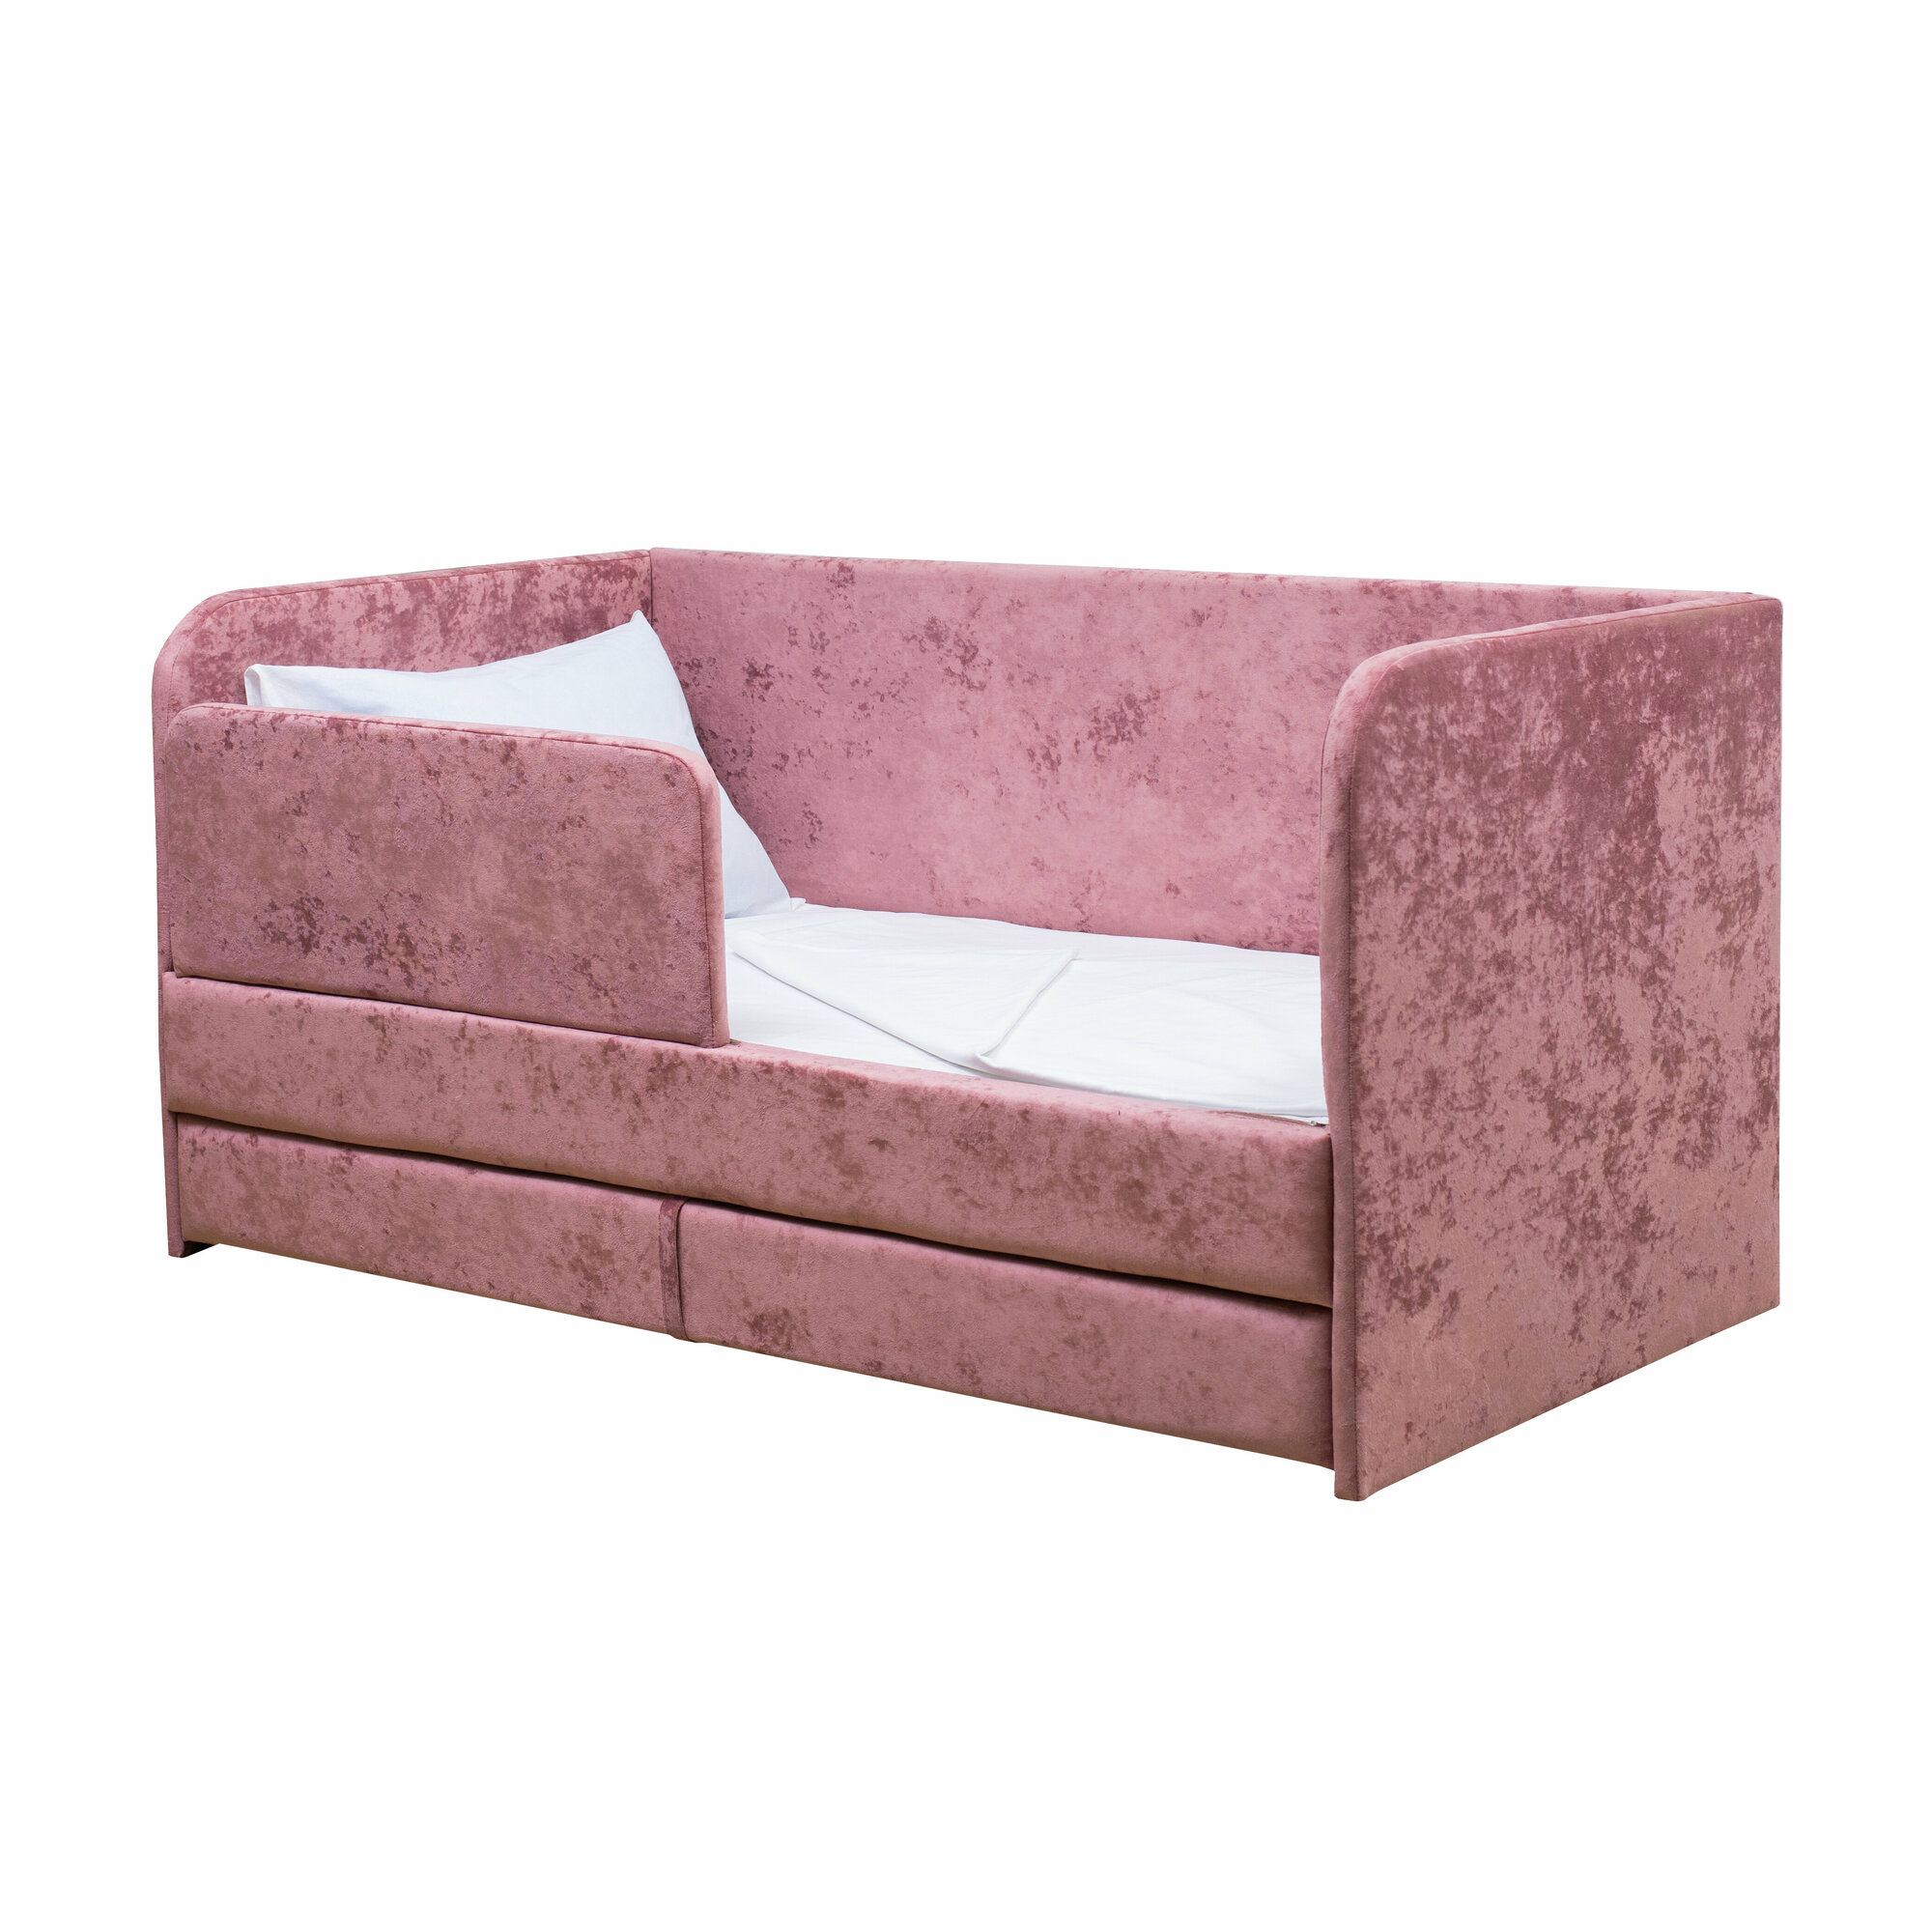 Кровать-диван "Непоседа" розовая 180х90 см, 2 спальных места, с ящиком, защитным бортиком